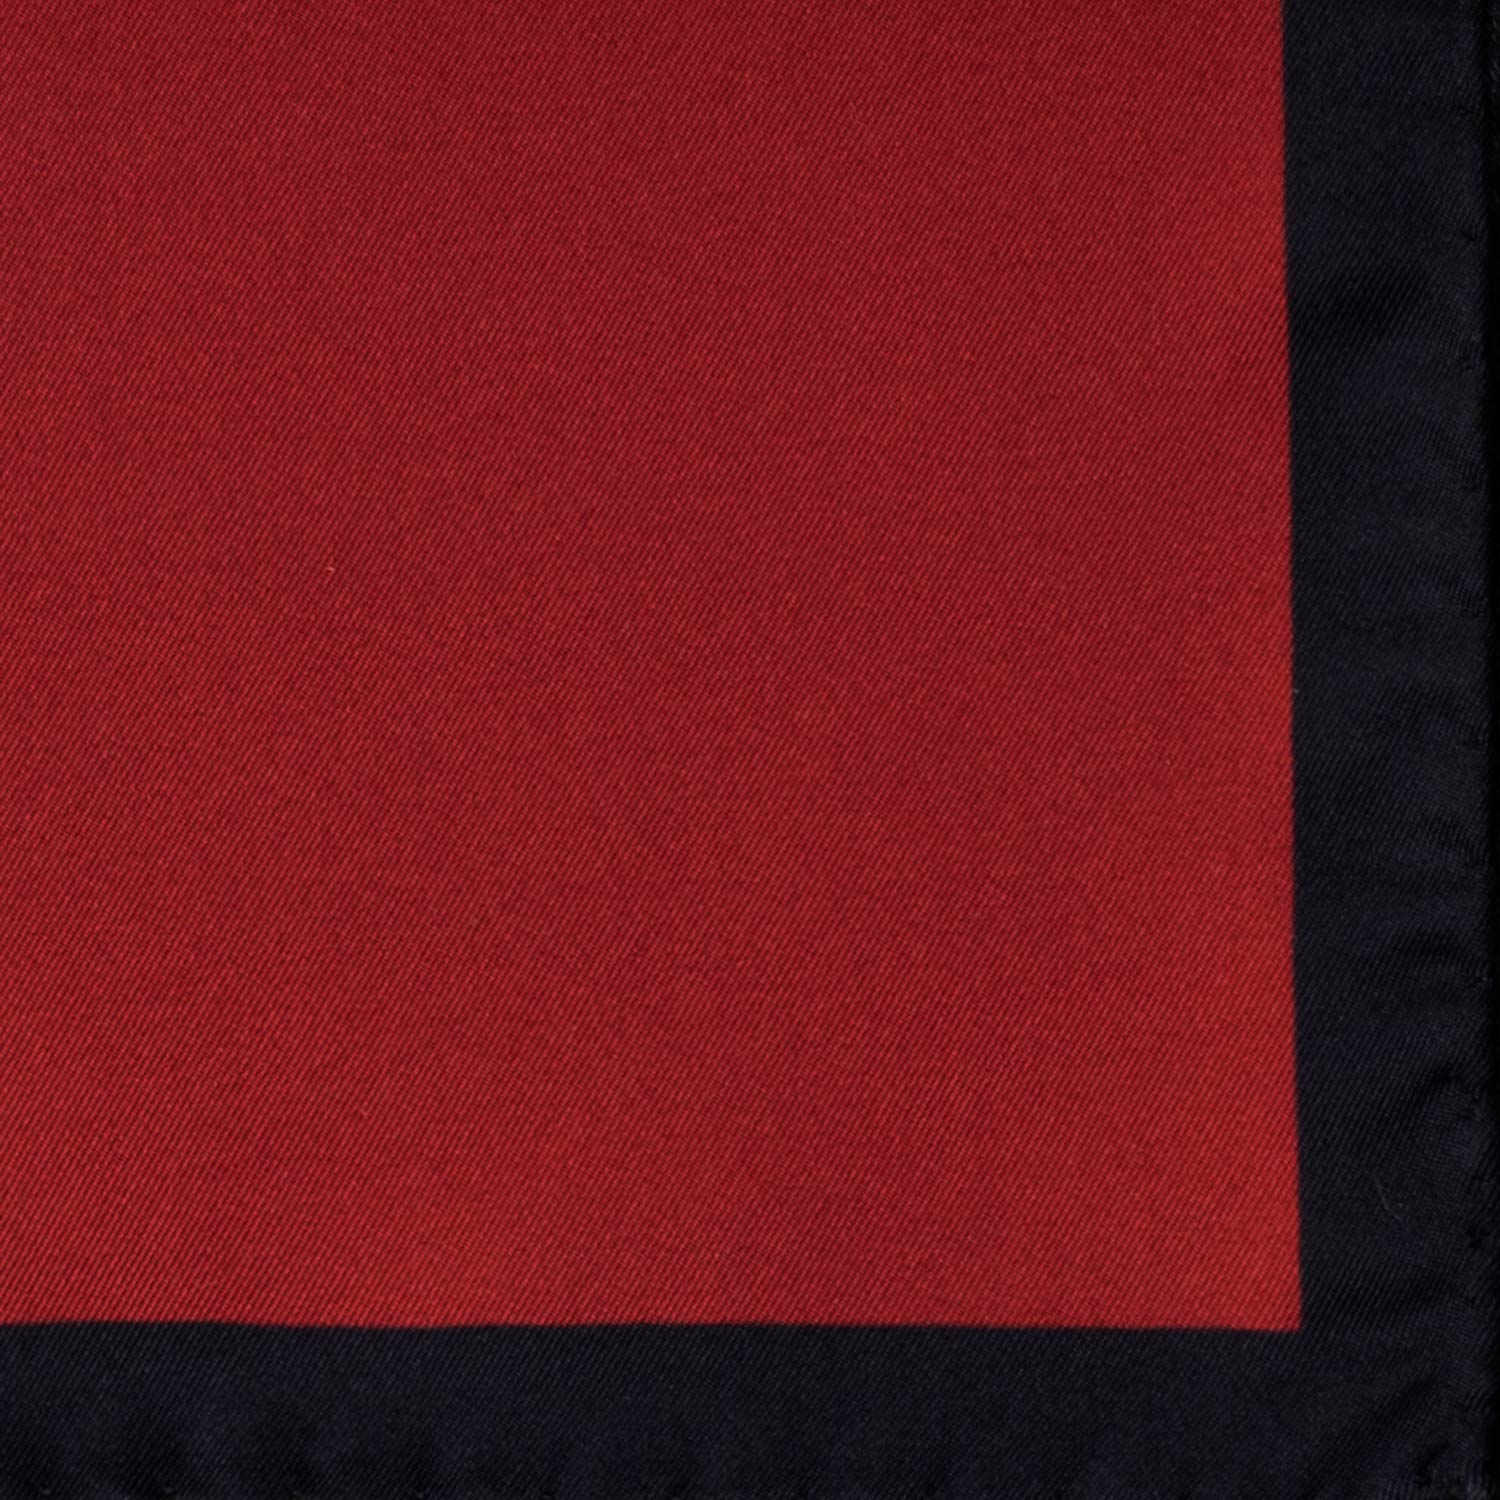 Fazzoletto da Taschino Vintage di Seta Rossa Bordeaux Blu Tinta Unita POCV759 Dettaglio